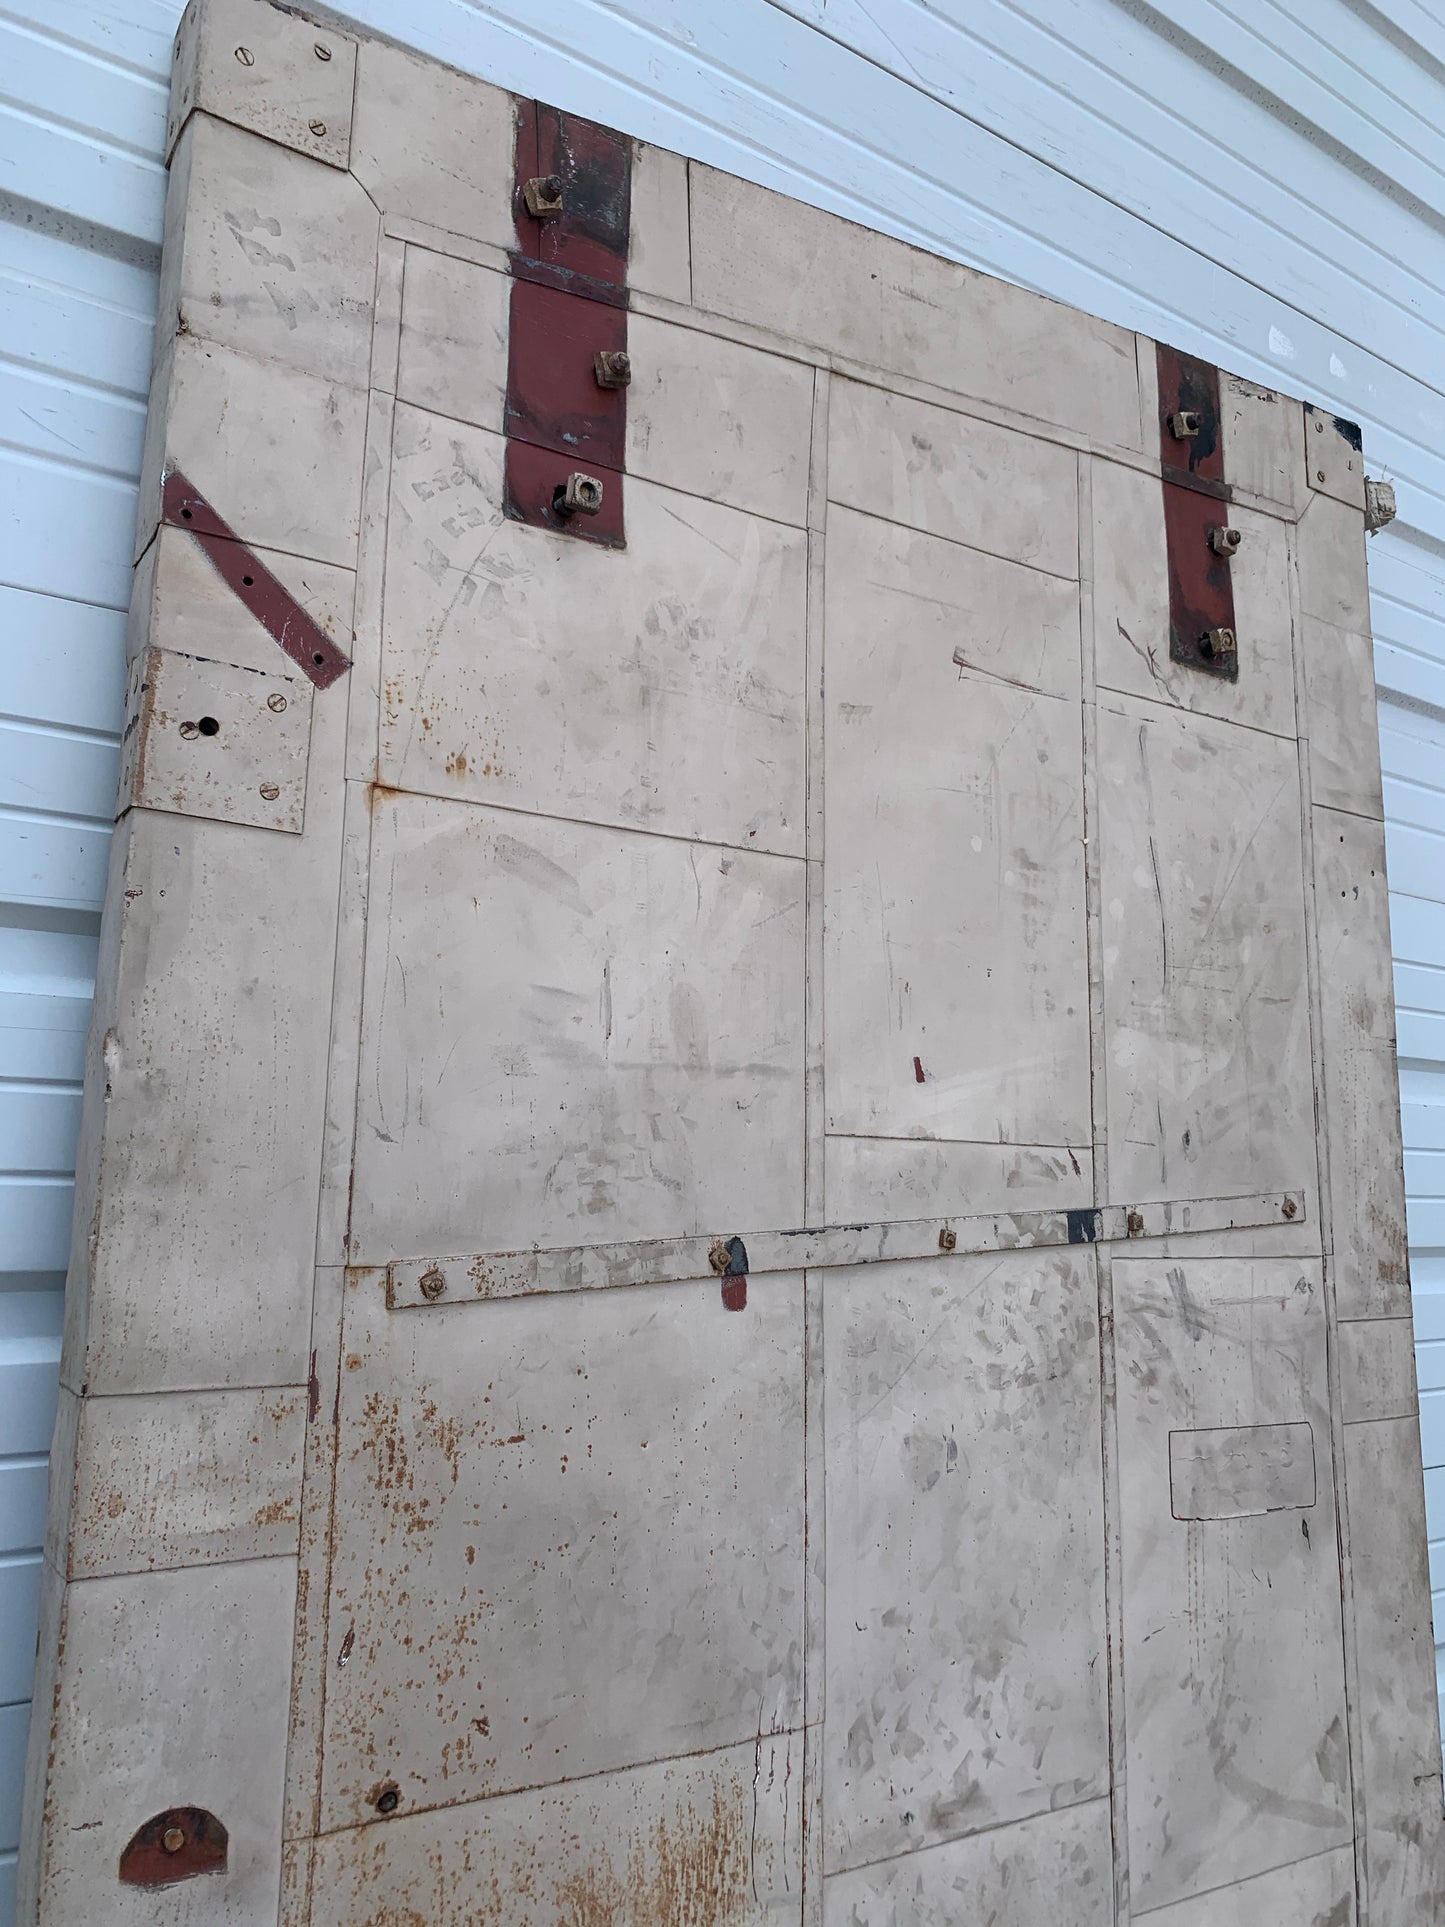 Industrial Metal Fire Single Door with Angled Top